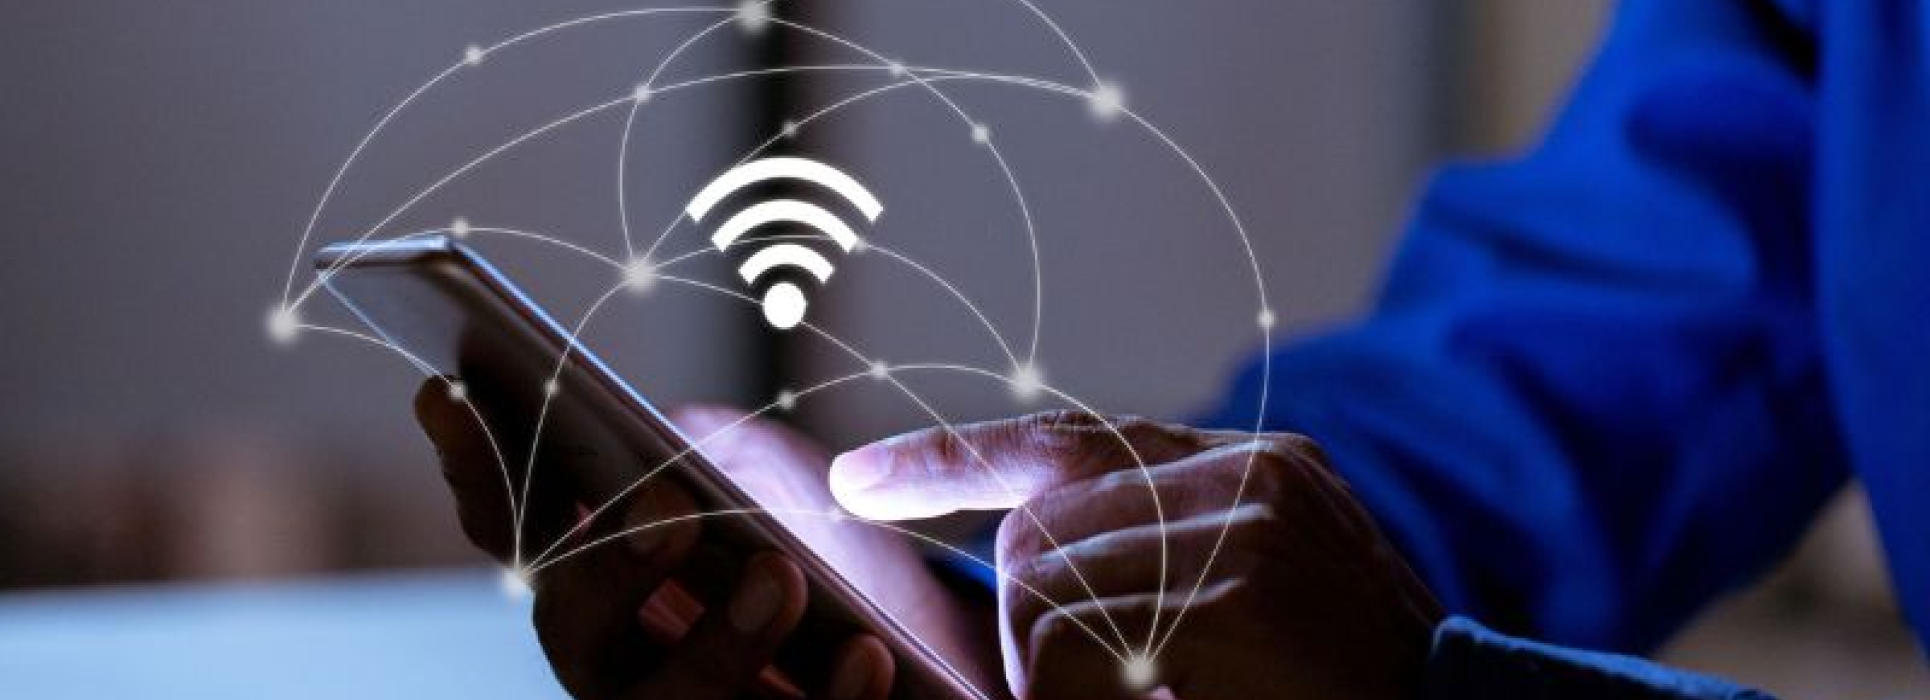 Meilleur système Wi-Fi en maillage pour 2022